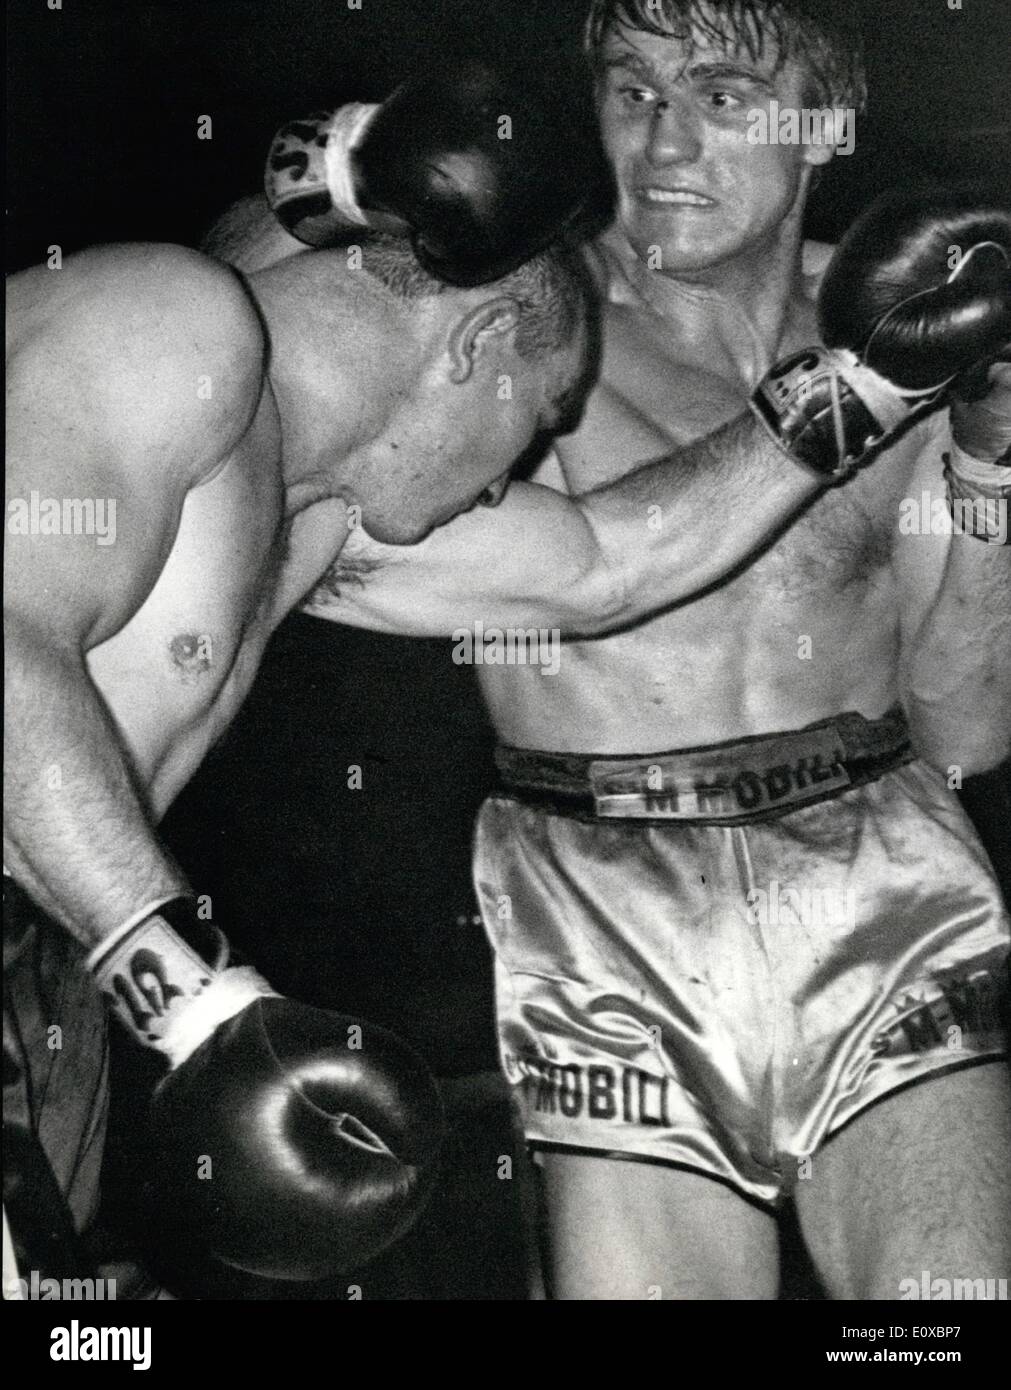 02 février 1966 - Nino Benvenuti outpointed la America's Don Fullmen de plus de 12 rounds au Sport Palace à Rome. La lutte était valide Banque D'Images